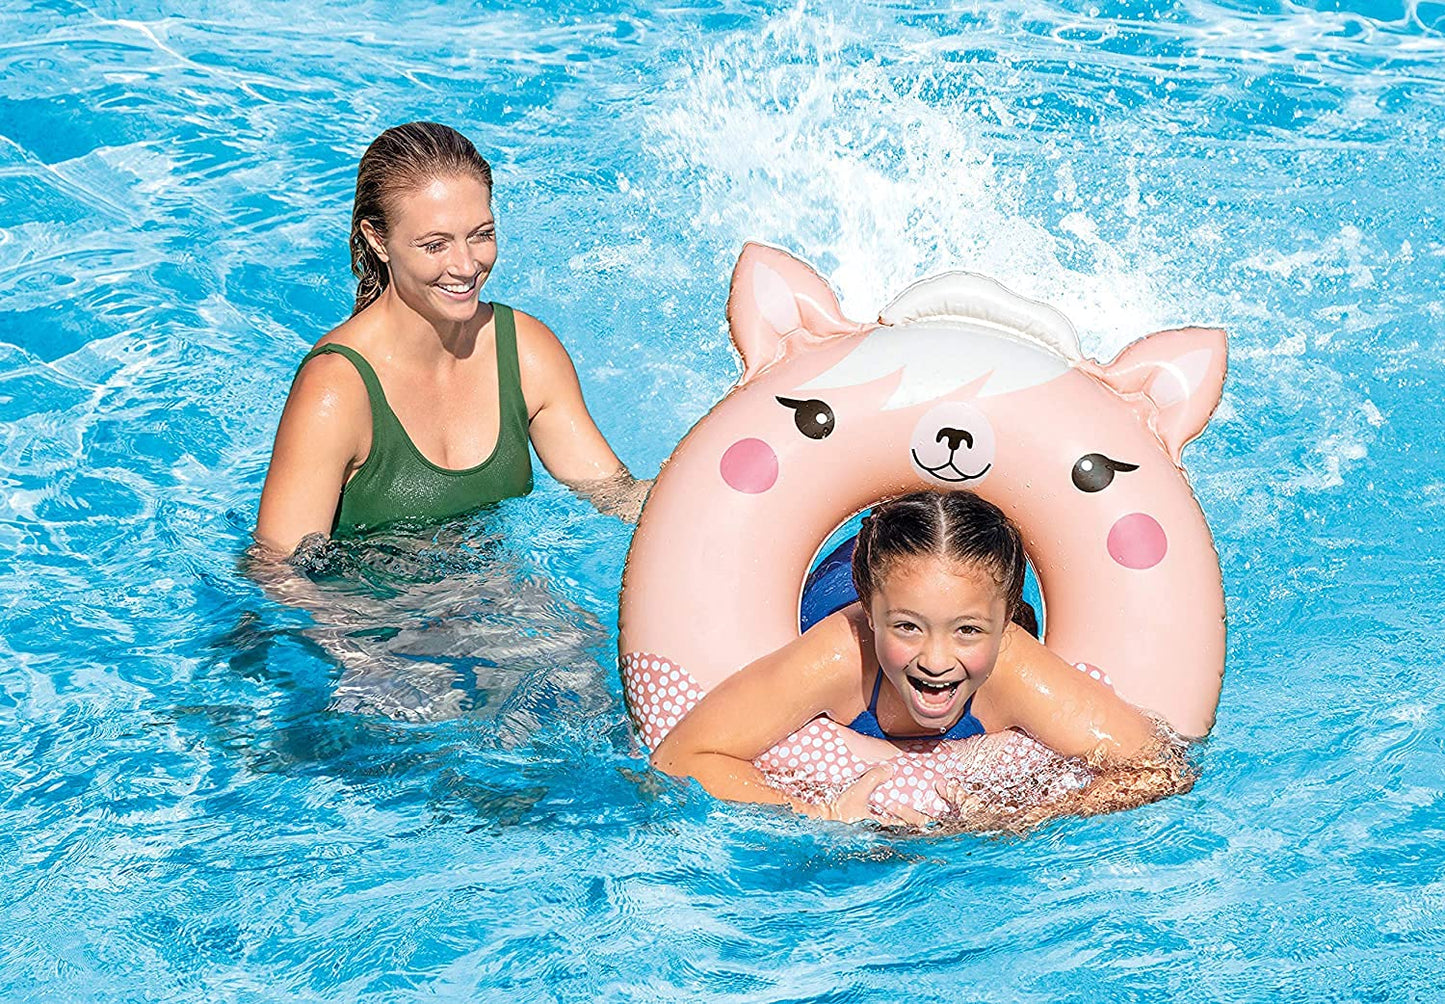 Intex  Cute Animal Inflatable Swim Rings